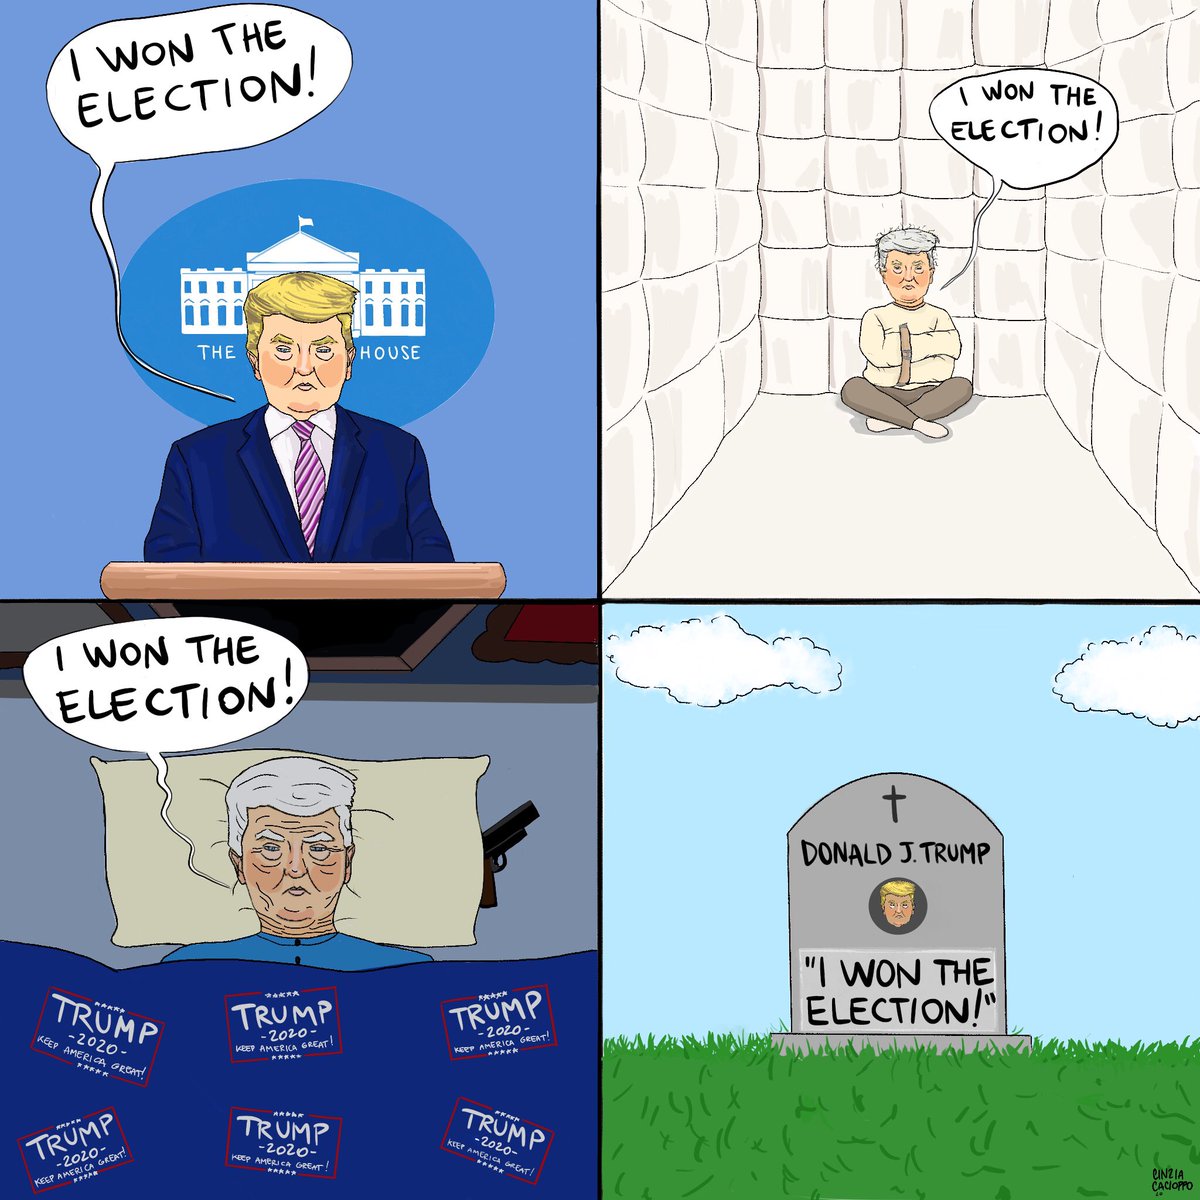 Tutto sommato l’ha presa bene, dai.

#vignetta #trump #USElectionResults